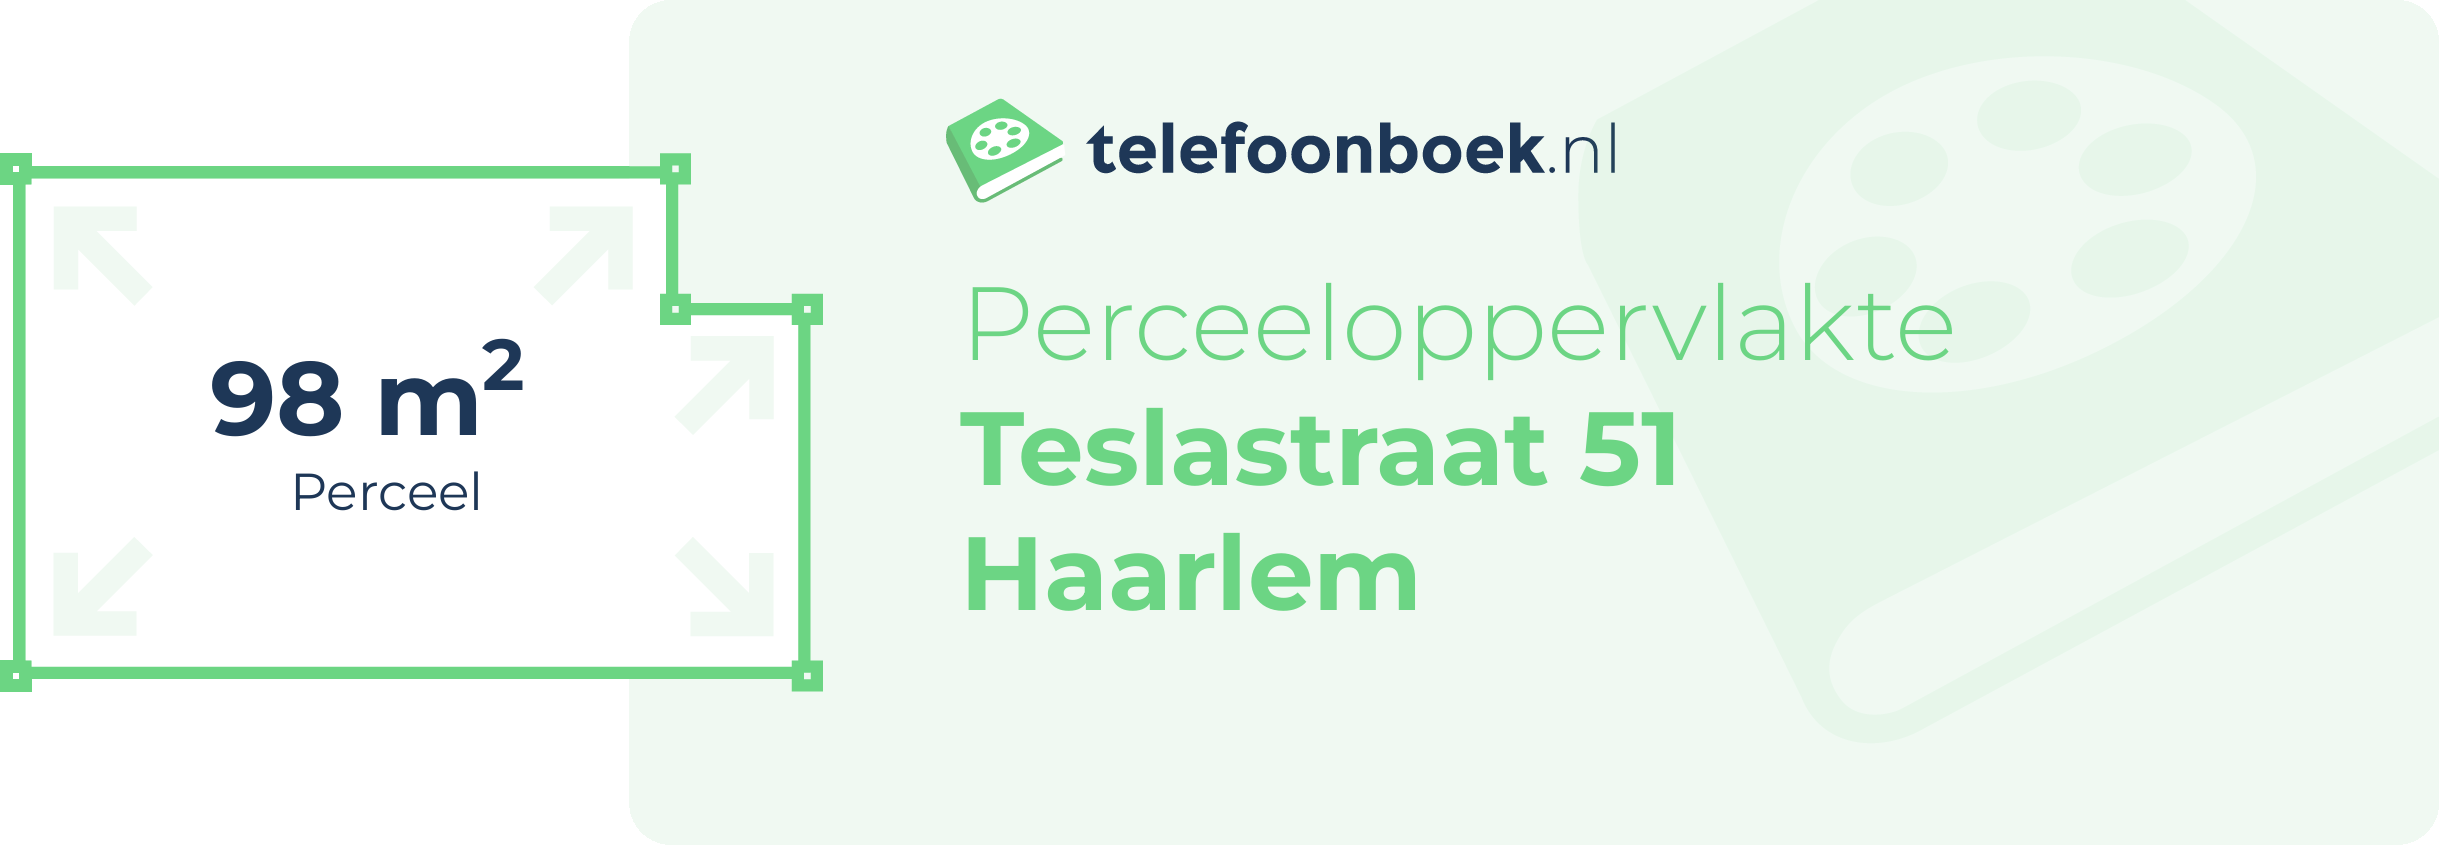 Perceeloppervlakte Teslastraat 51 Haarlem